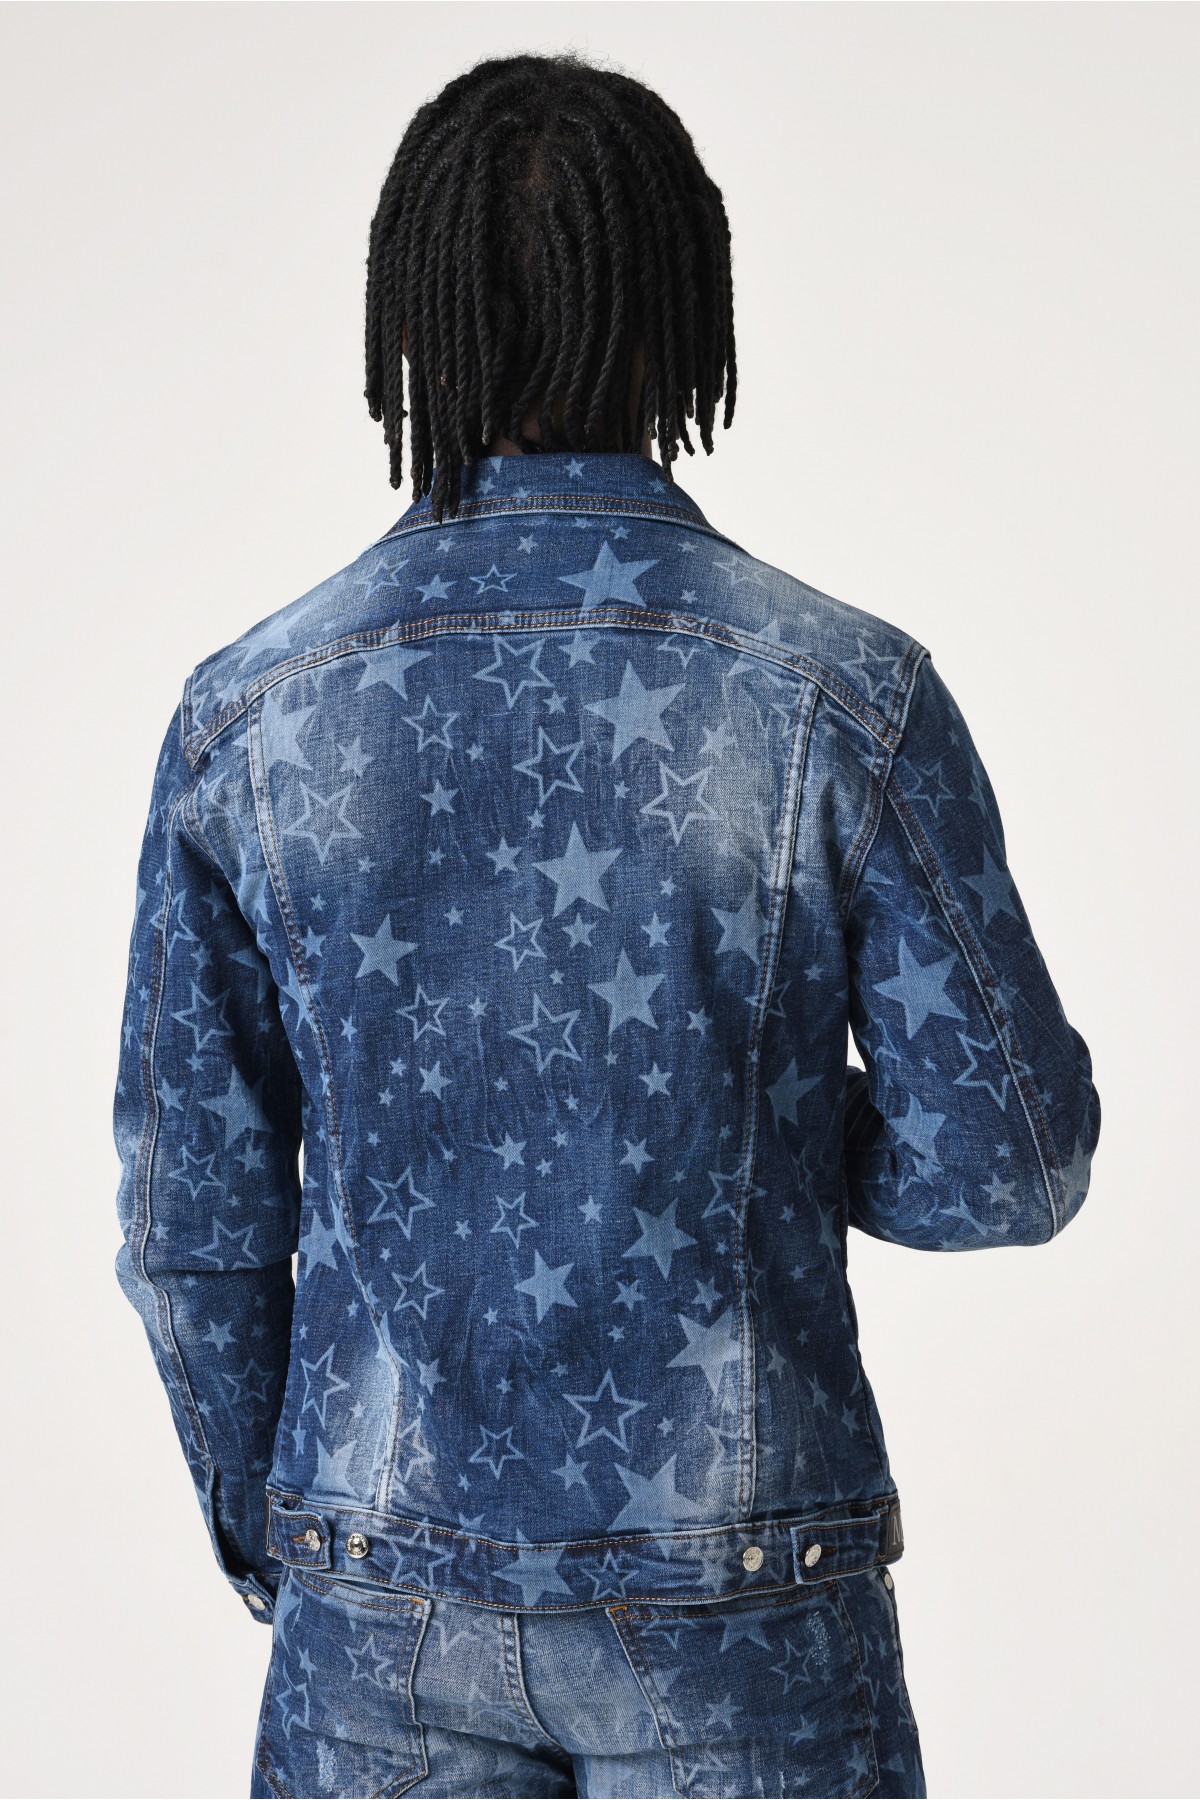 Erkek Denim Ceket - Lazer yıldız baskılı - Koyu Mavi